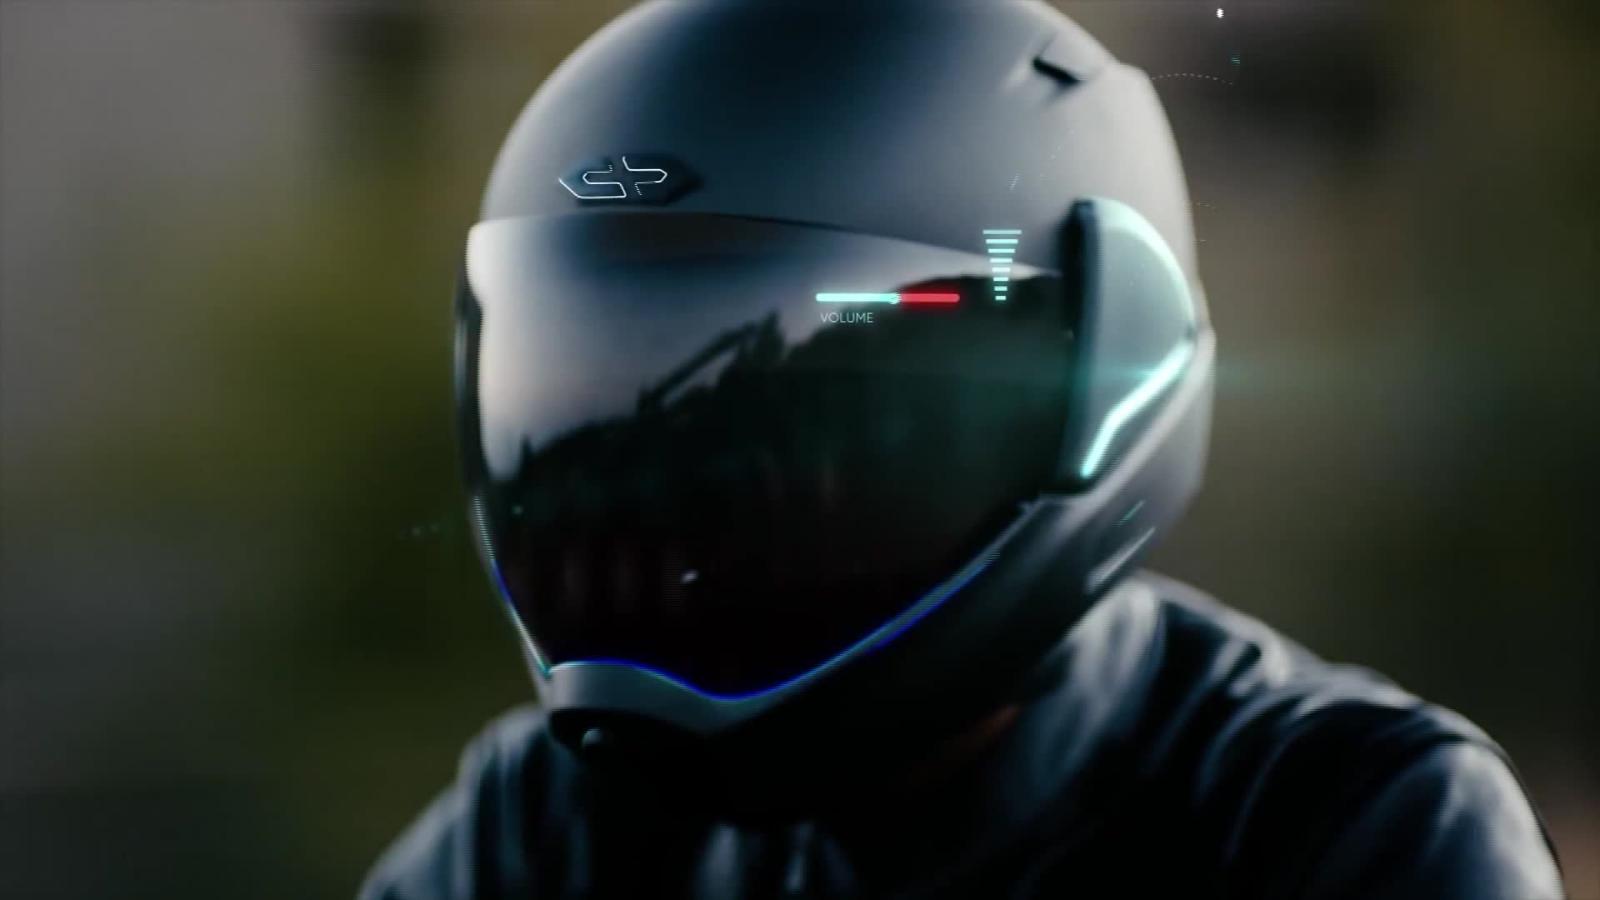 pasatiempo fuegos artificiales campana Fabrican cascos inteligentes para motociclistas | Video | CNN